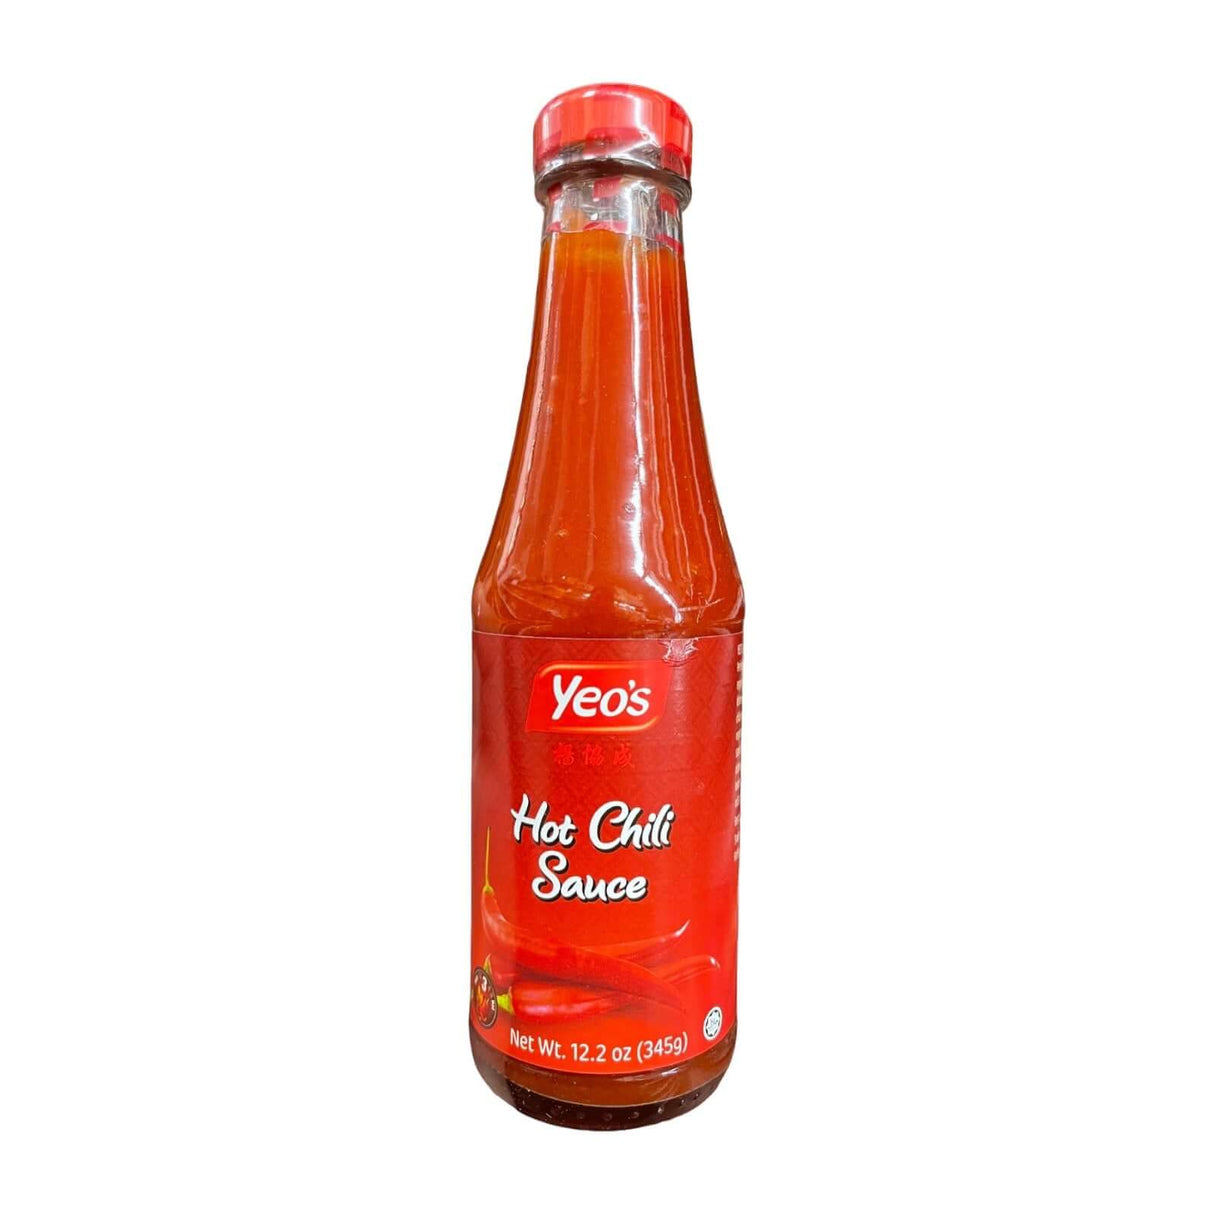 Yeo's Hot Chili Sauce